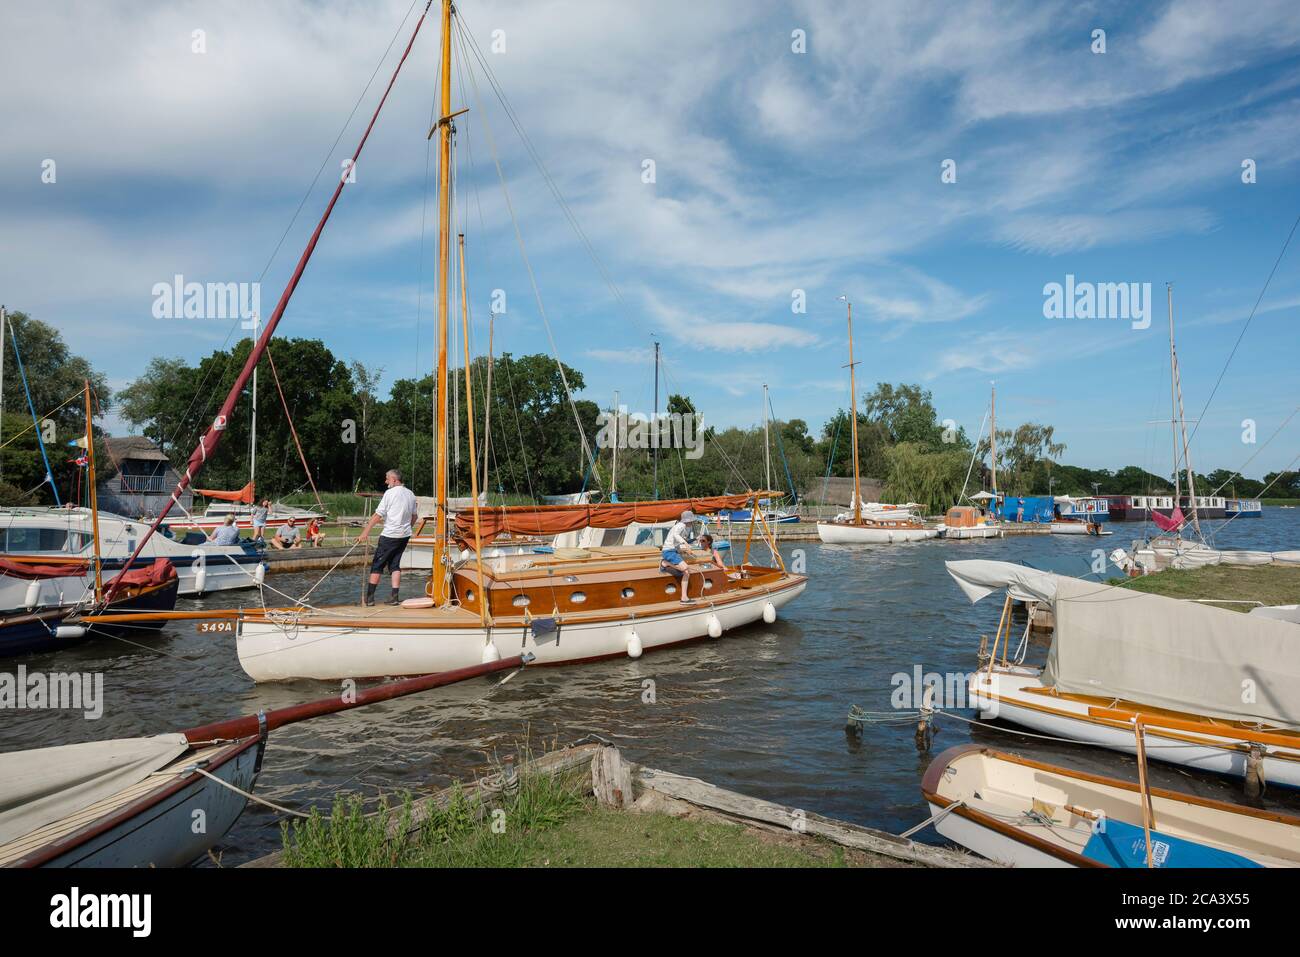 Familiensegeln, Blick im Sommer auf eine Familiengruppe, die ihr Boot entlang einer Wasserstraße in den Norfolk Broads, England, Großbritannien, navigiert Stockfoto